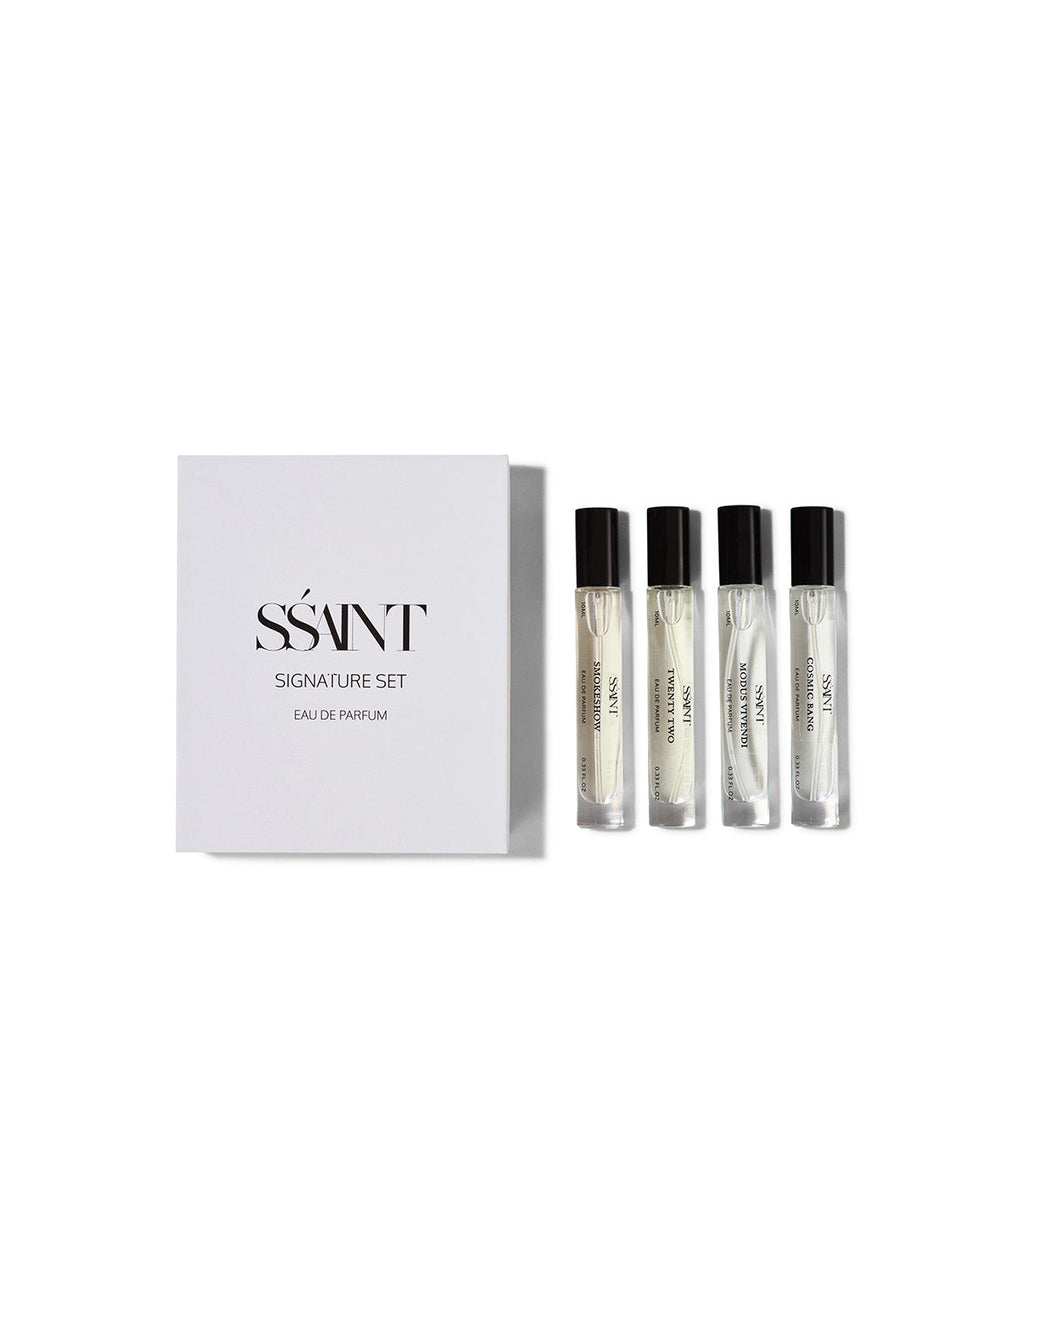 SSAINT Parfume - Signature Set